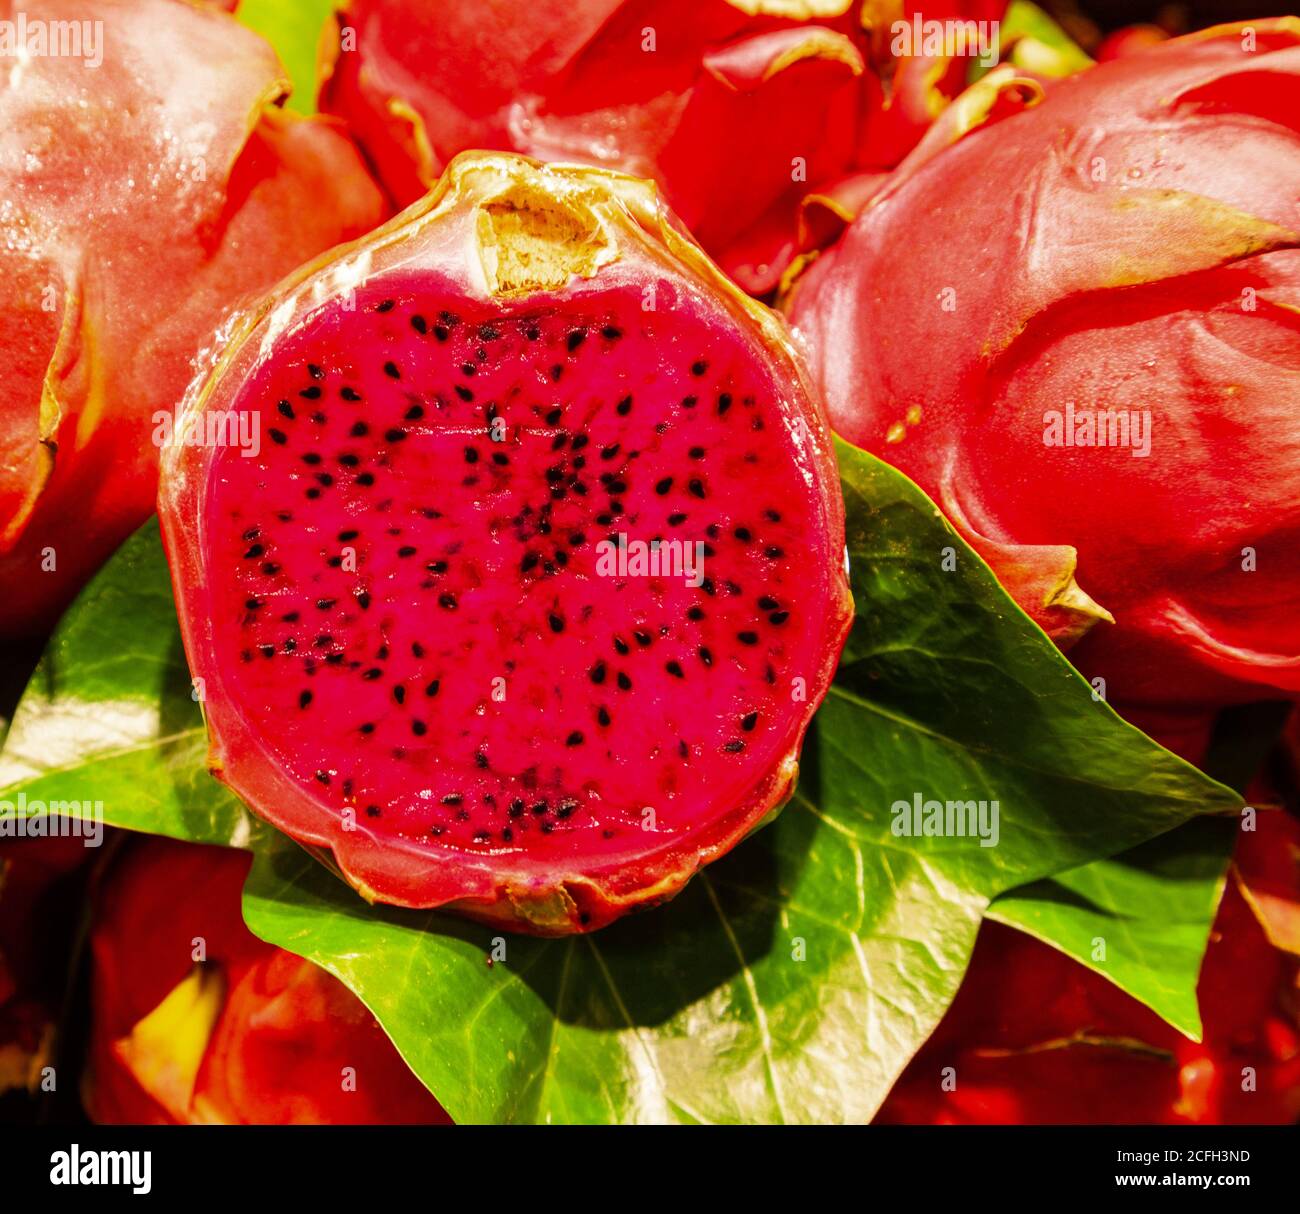 dragon fruit ou pitaya pousse sur une vigne populaire asiatique fruits Banque D'Images